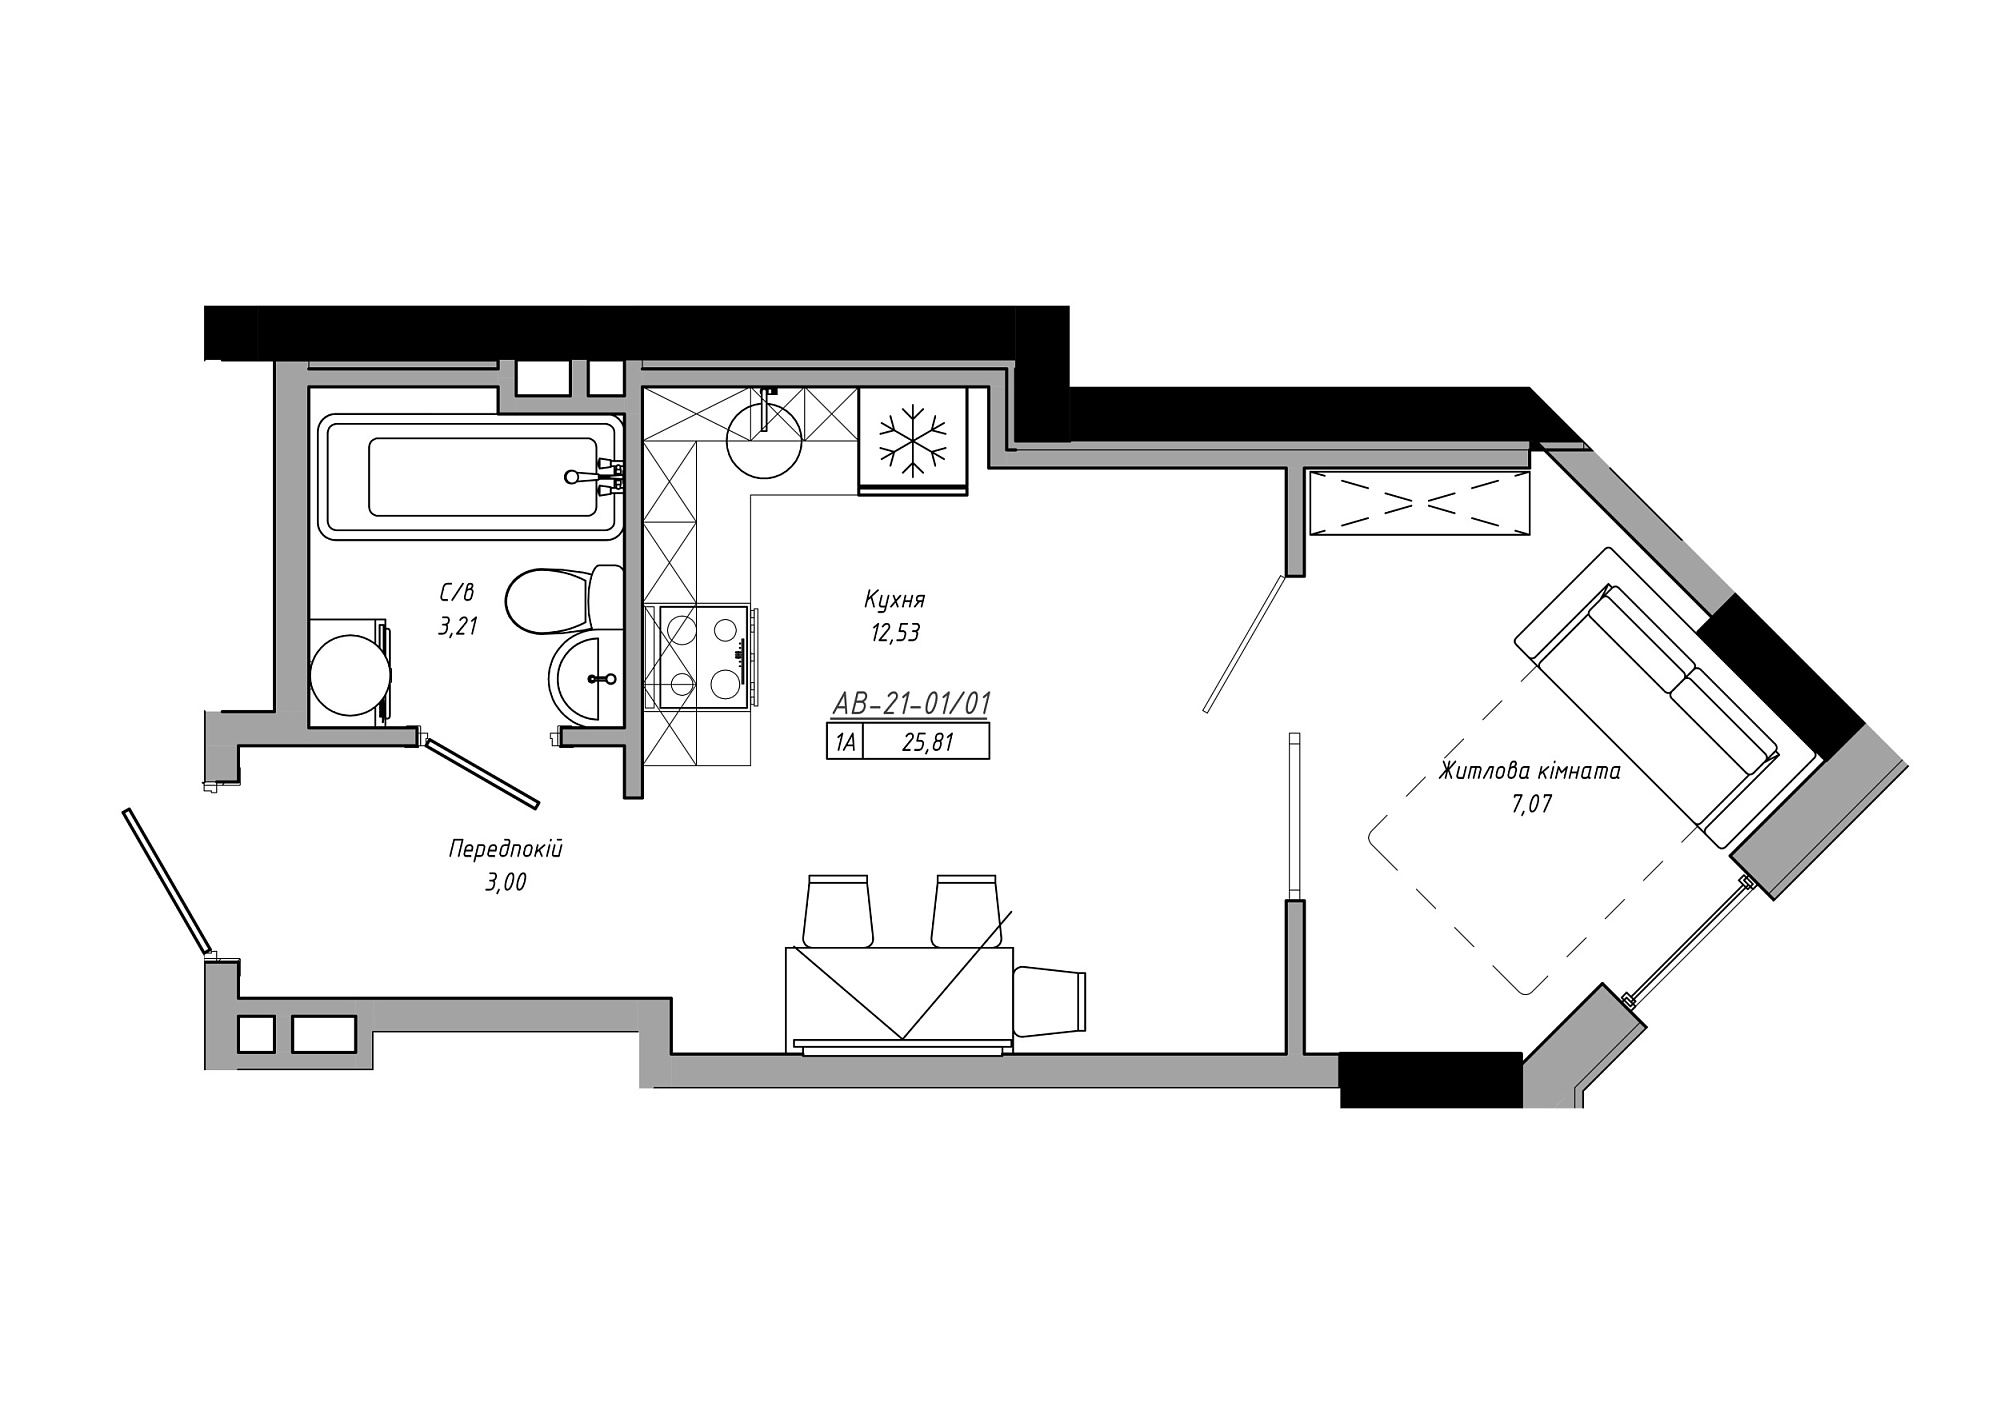 Планування 1-к квартира площею 25.81м2, AB-21-01/00001.